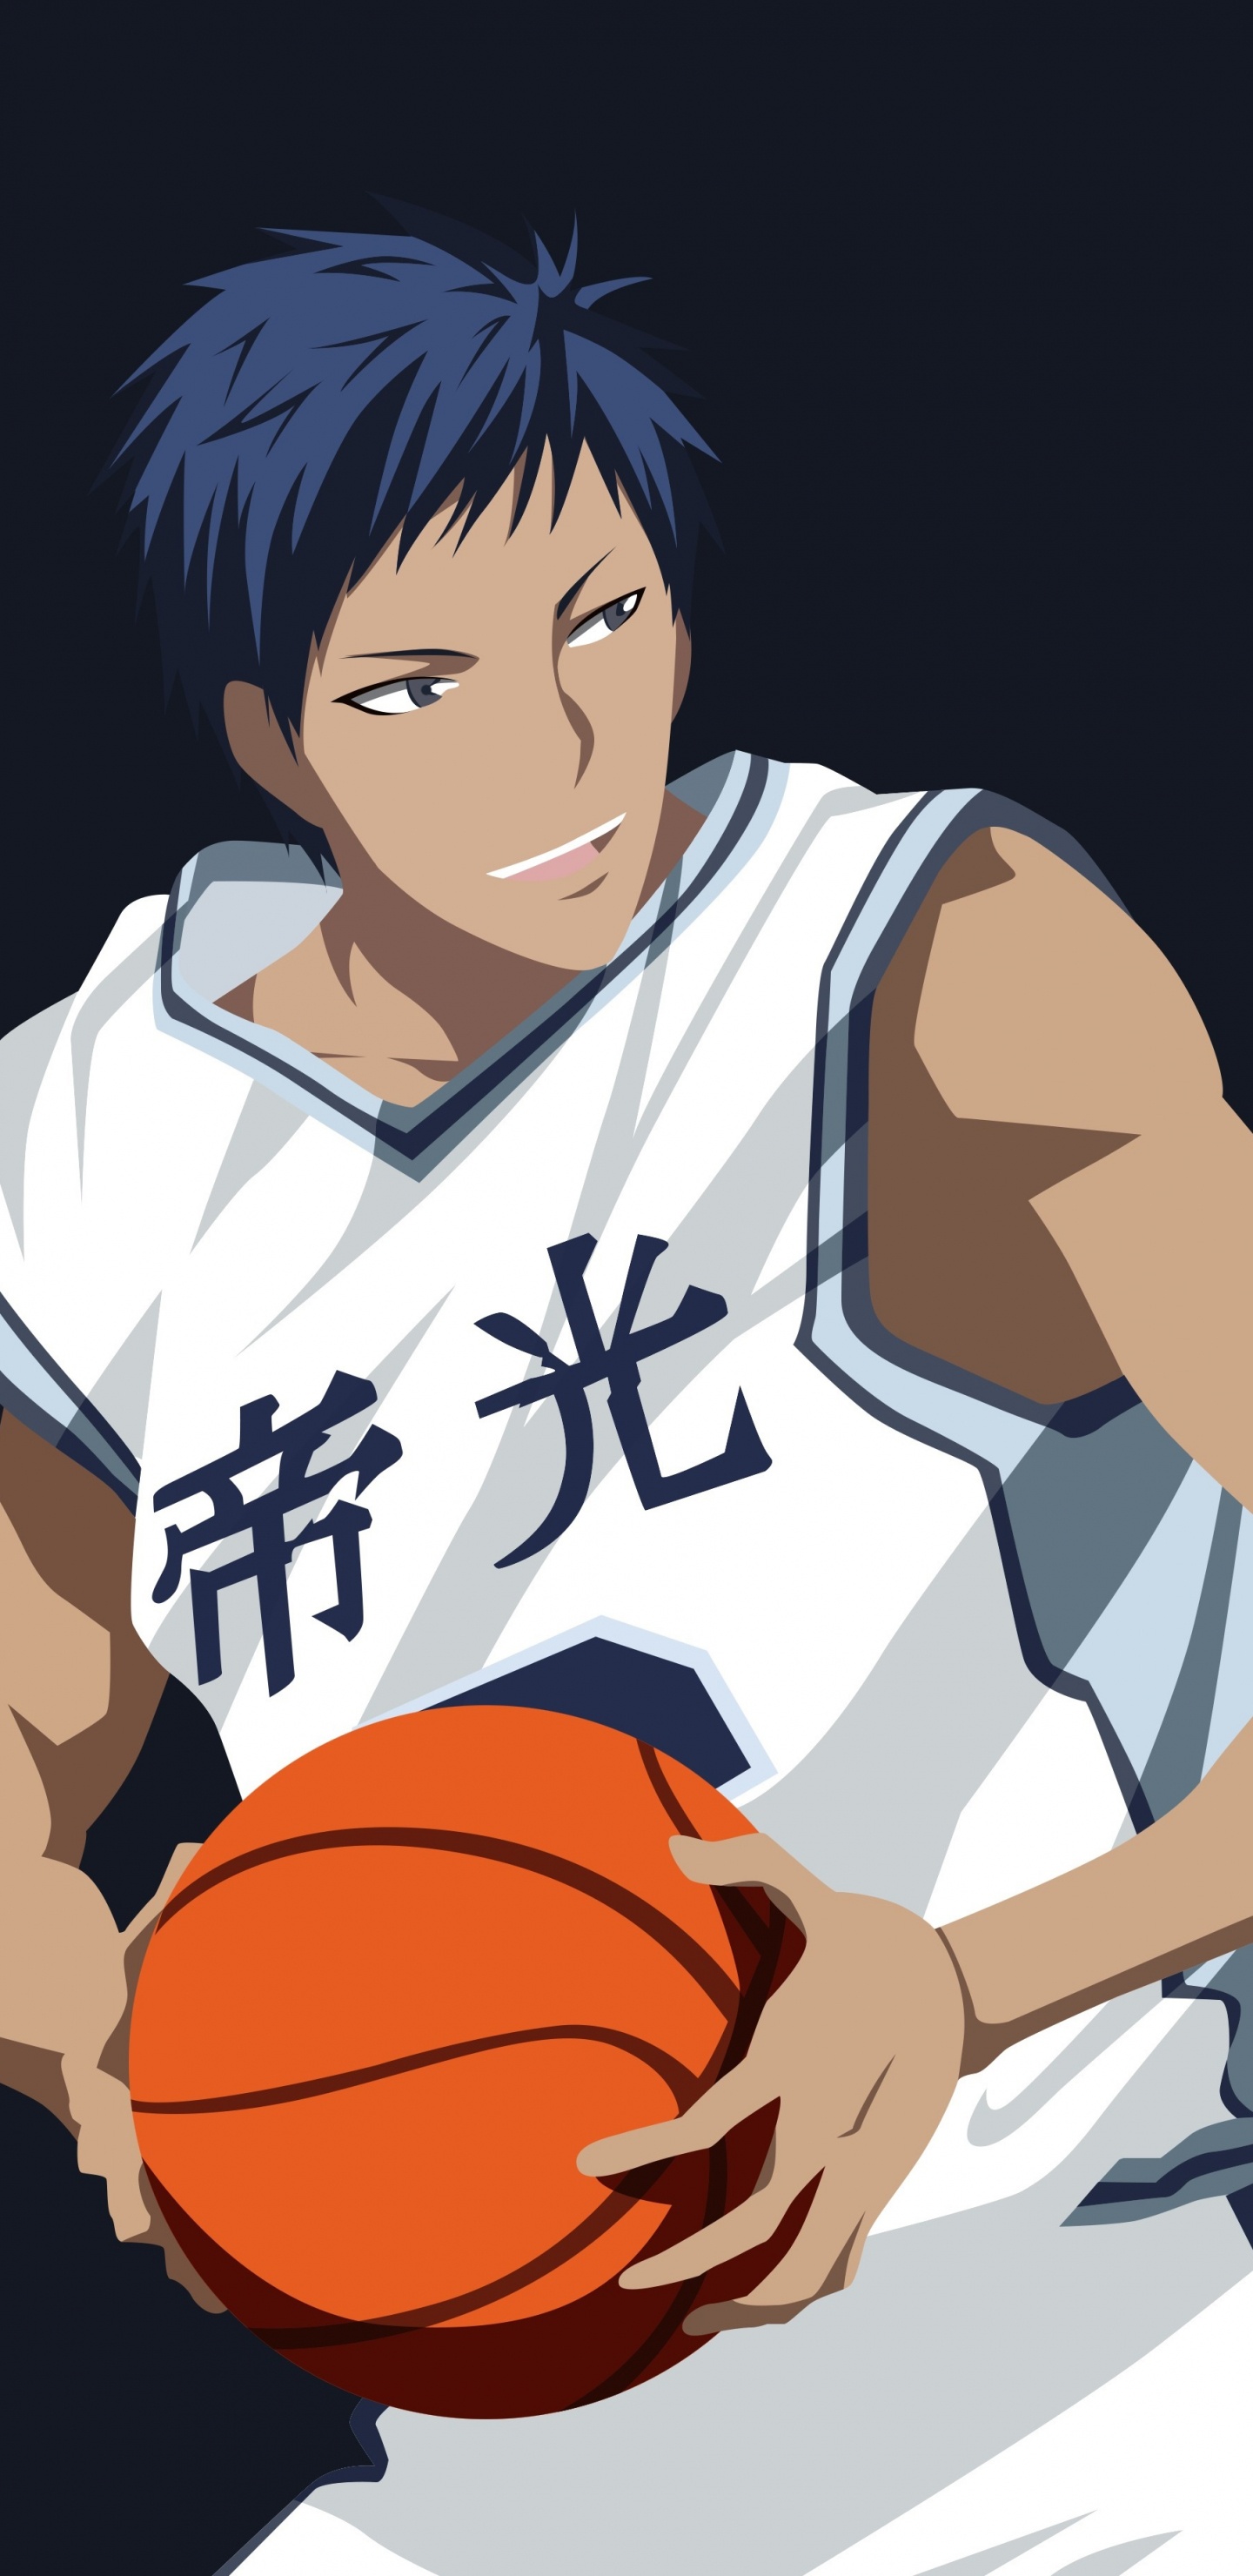 Schwarzhaariger Männlicher Anime-Charakter, Der Basketball Hält. Wallpaper in 1440x2960 Resolution